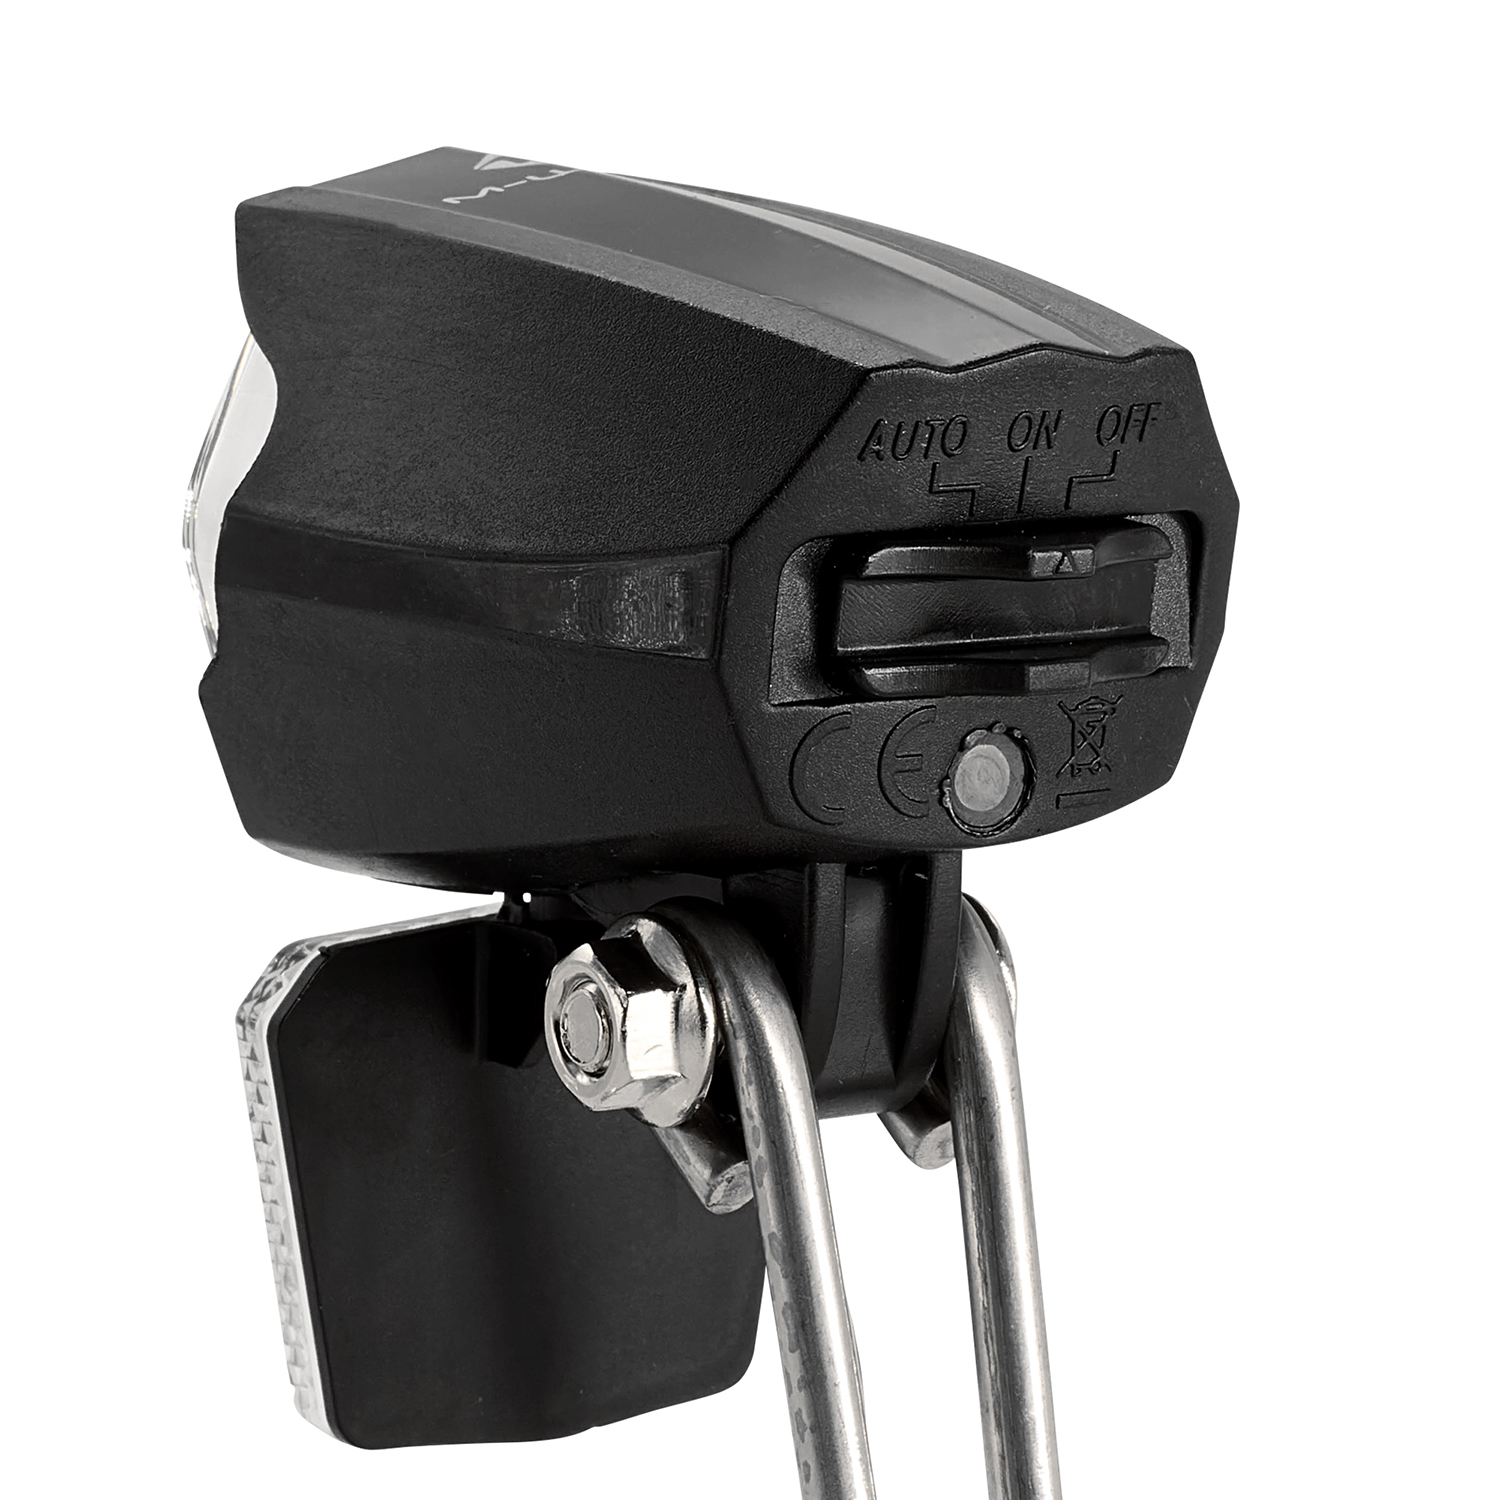 LED-Scheinwerfer APOLLON E 30 für E-Bikes in schwarz